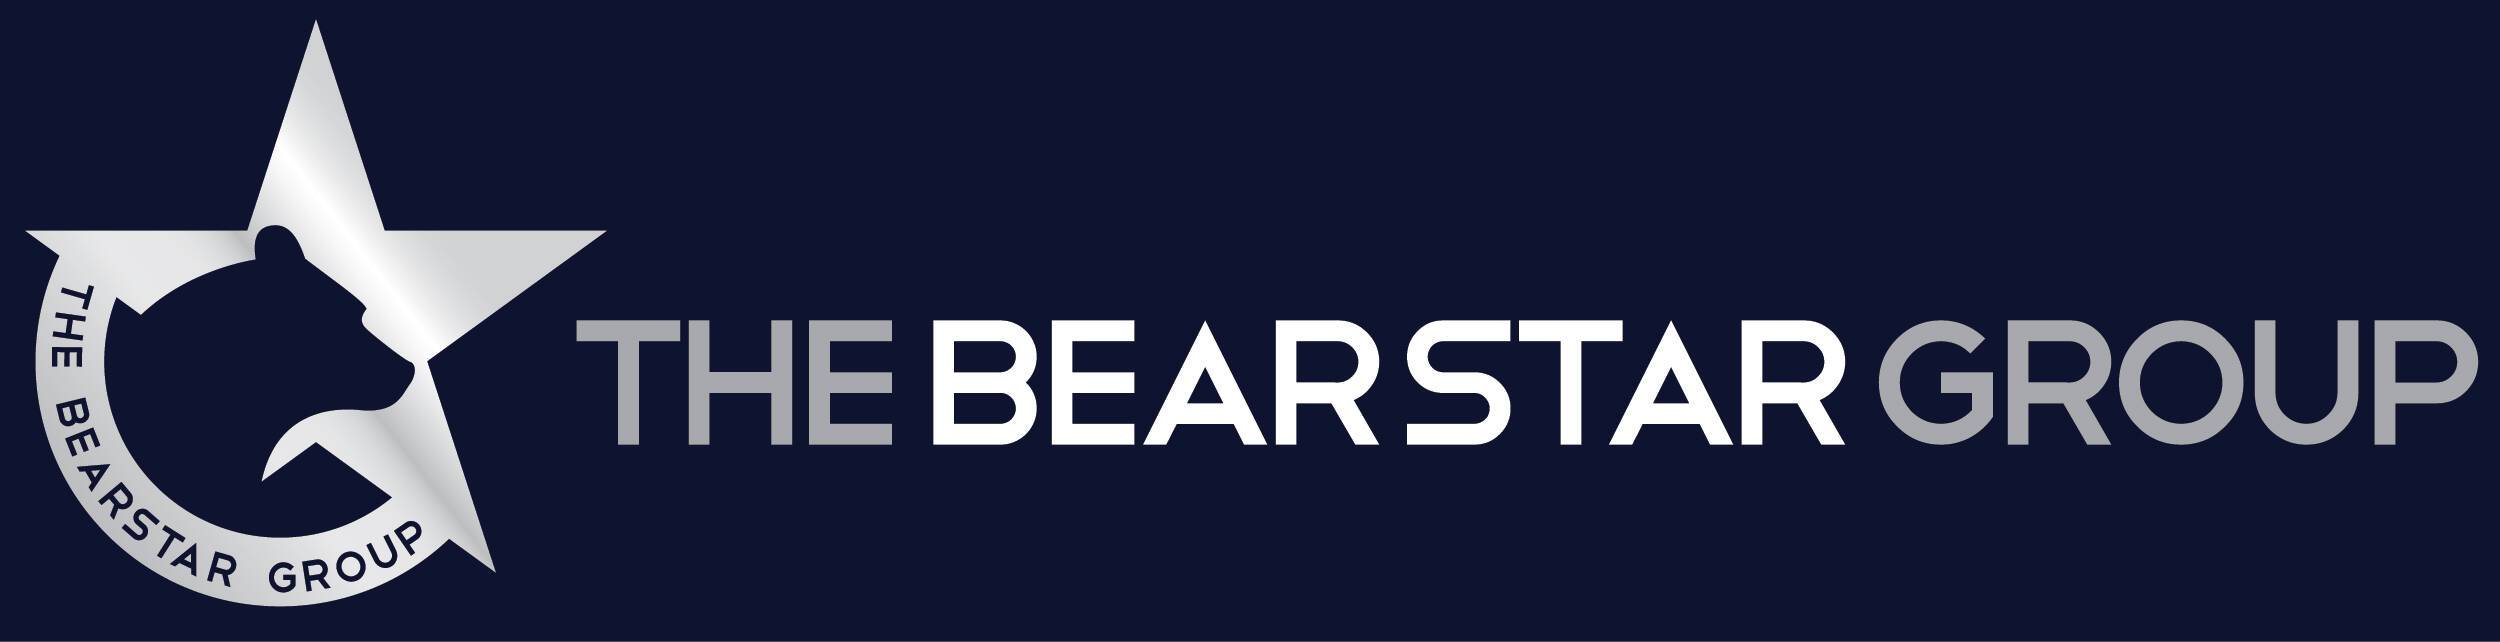 The Bearstar Group